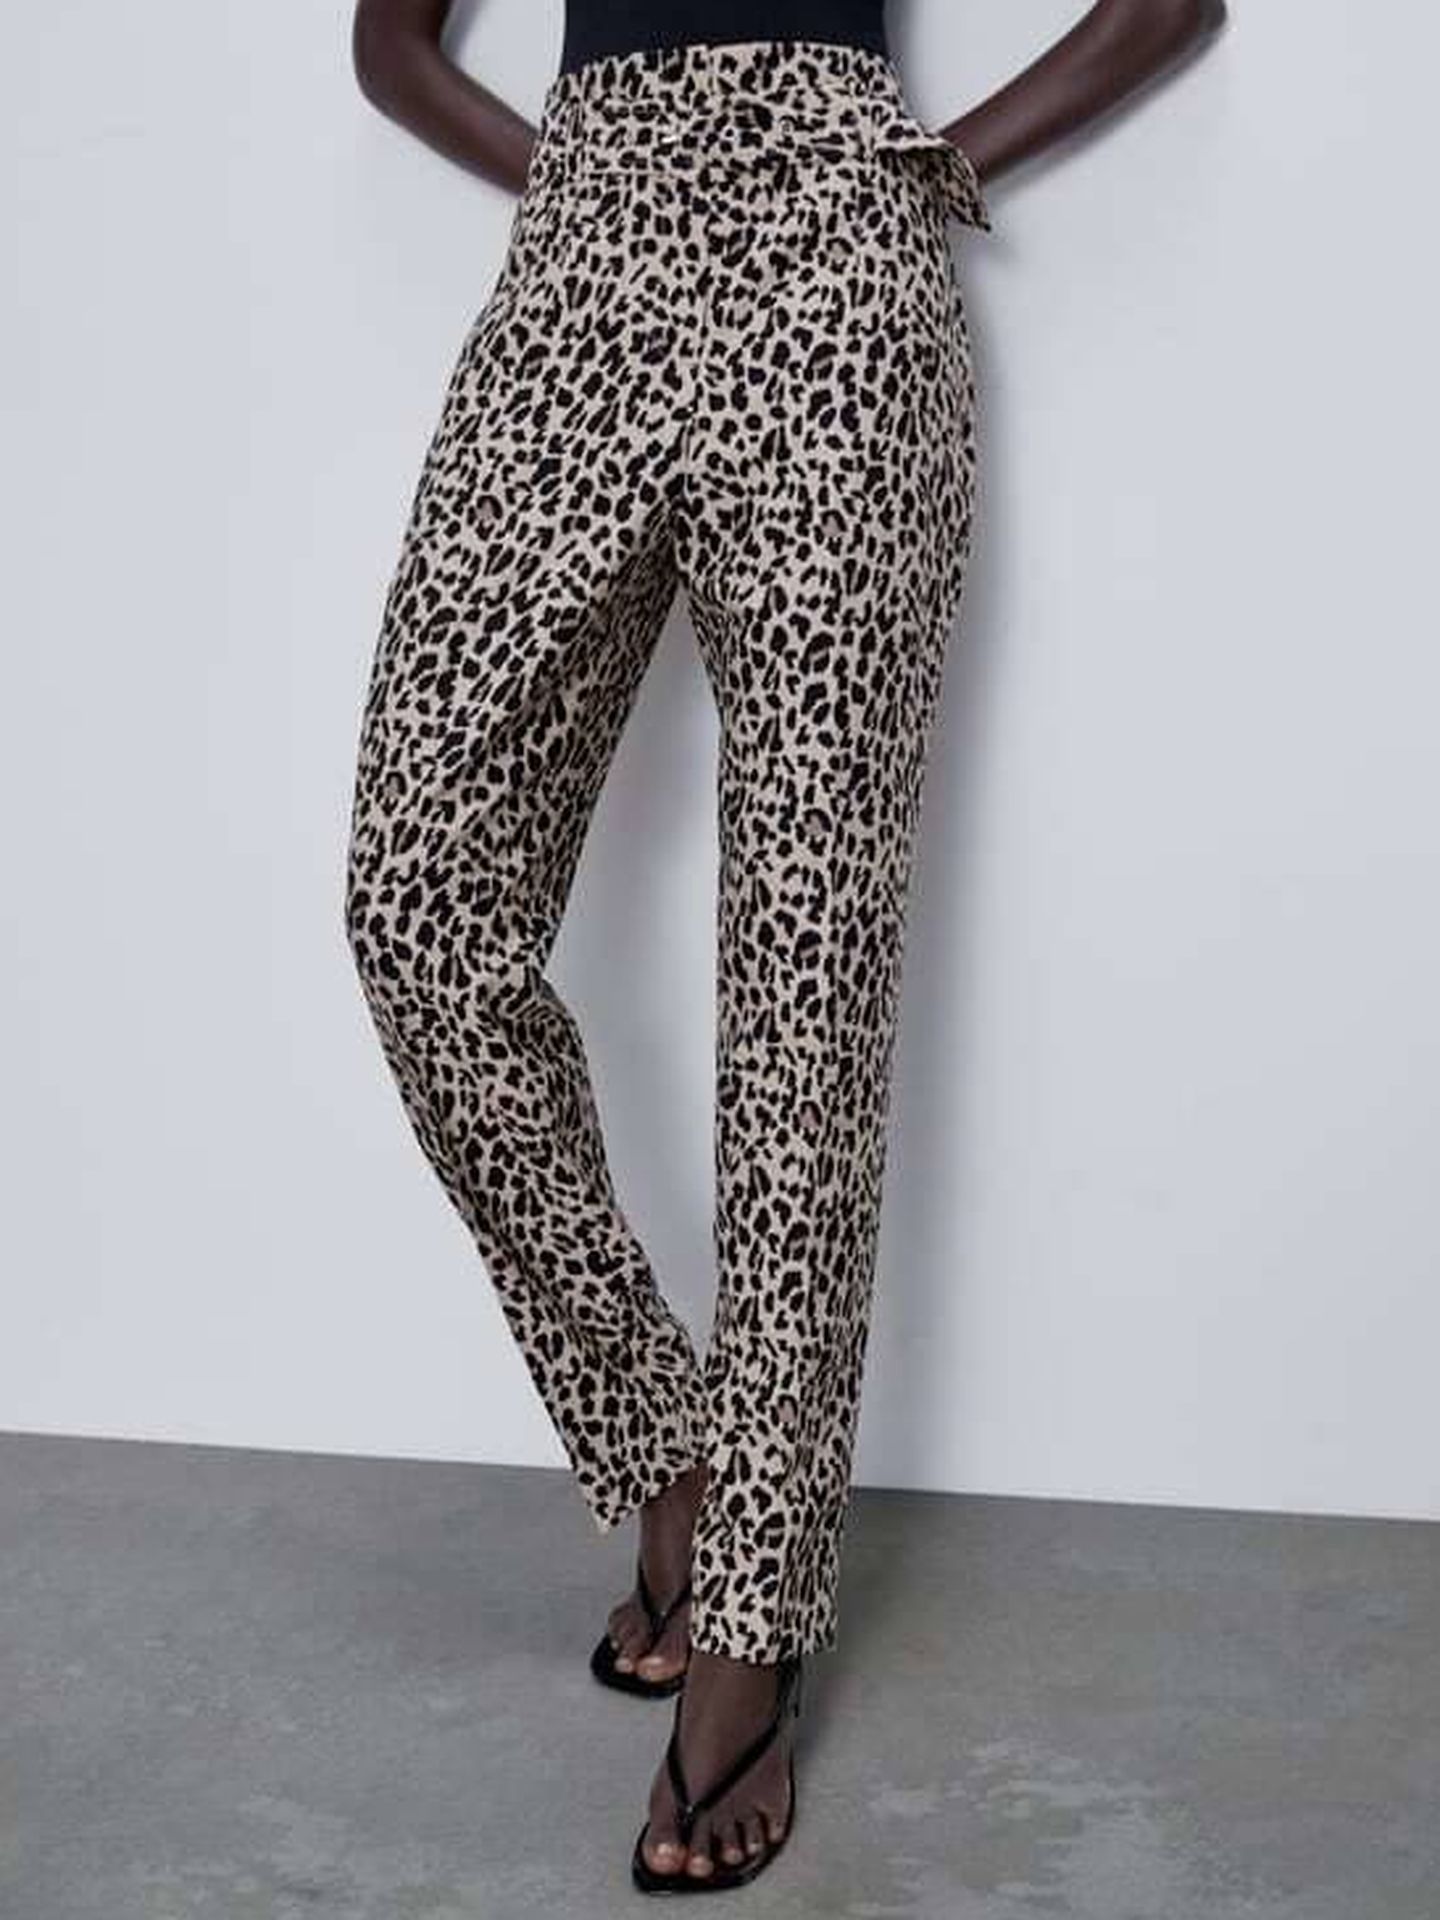 Pantalones de leopardo de Zara. (Cortesía)